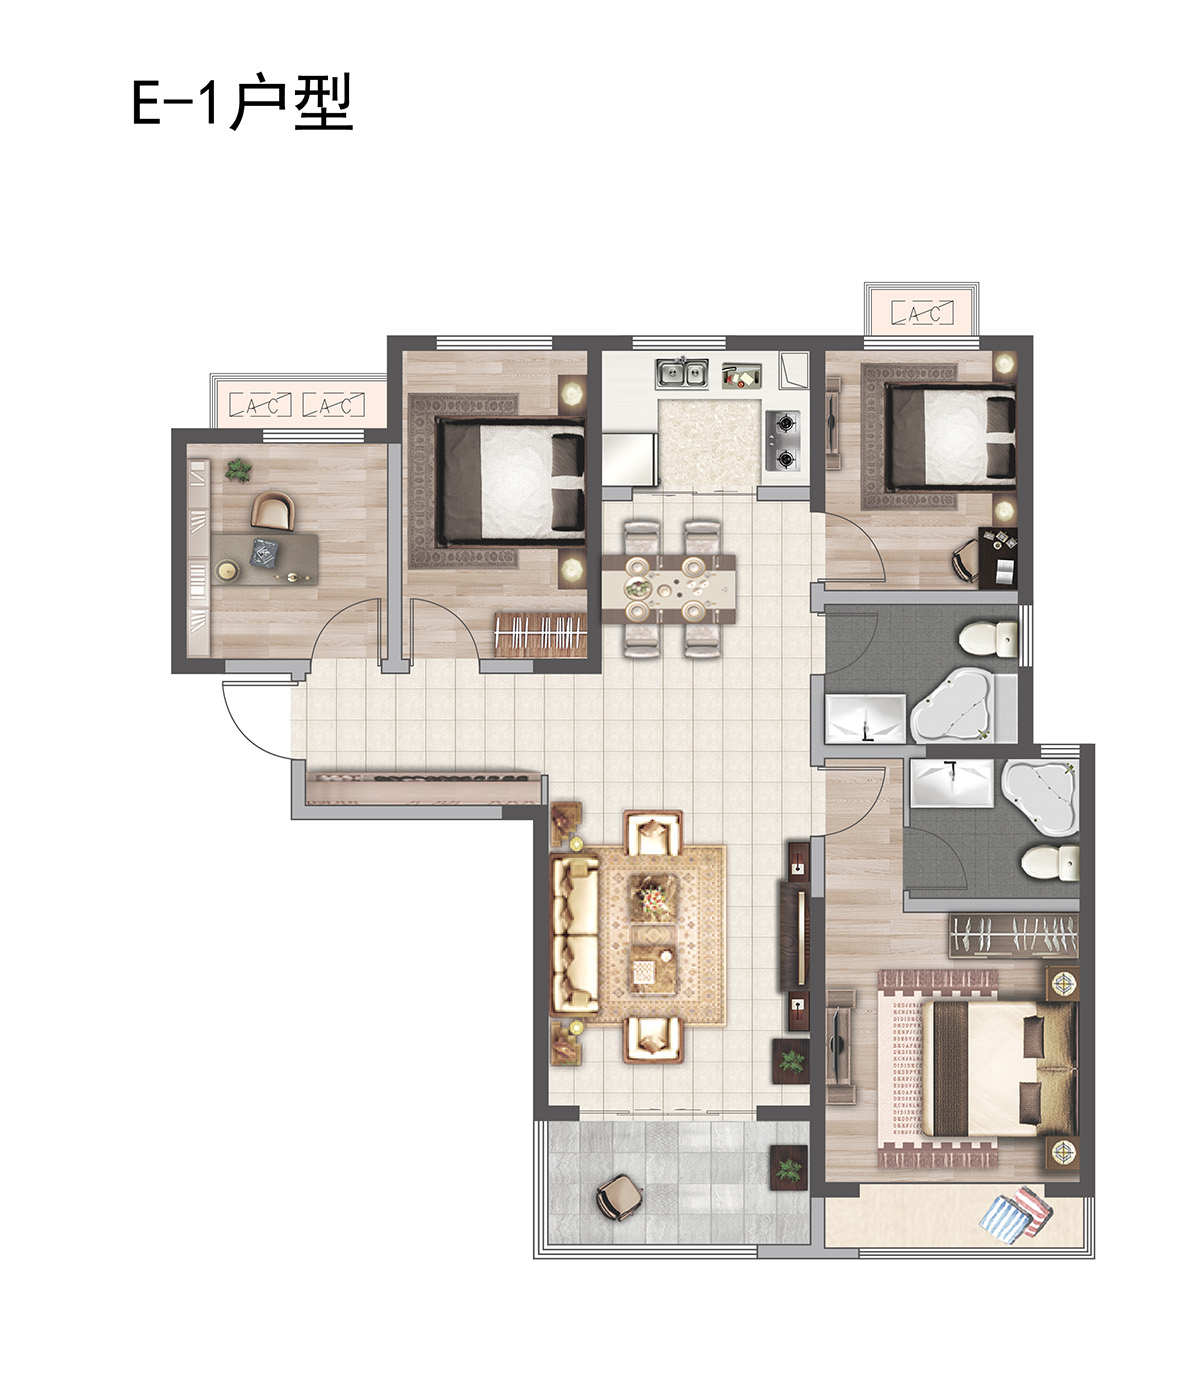 E-1户型 130㎡ 四室两厅一厨两卫